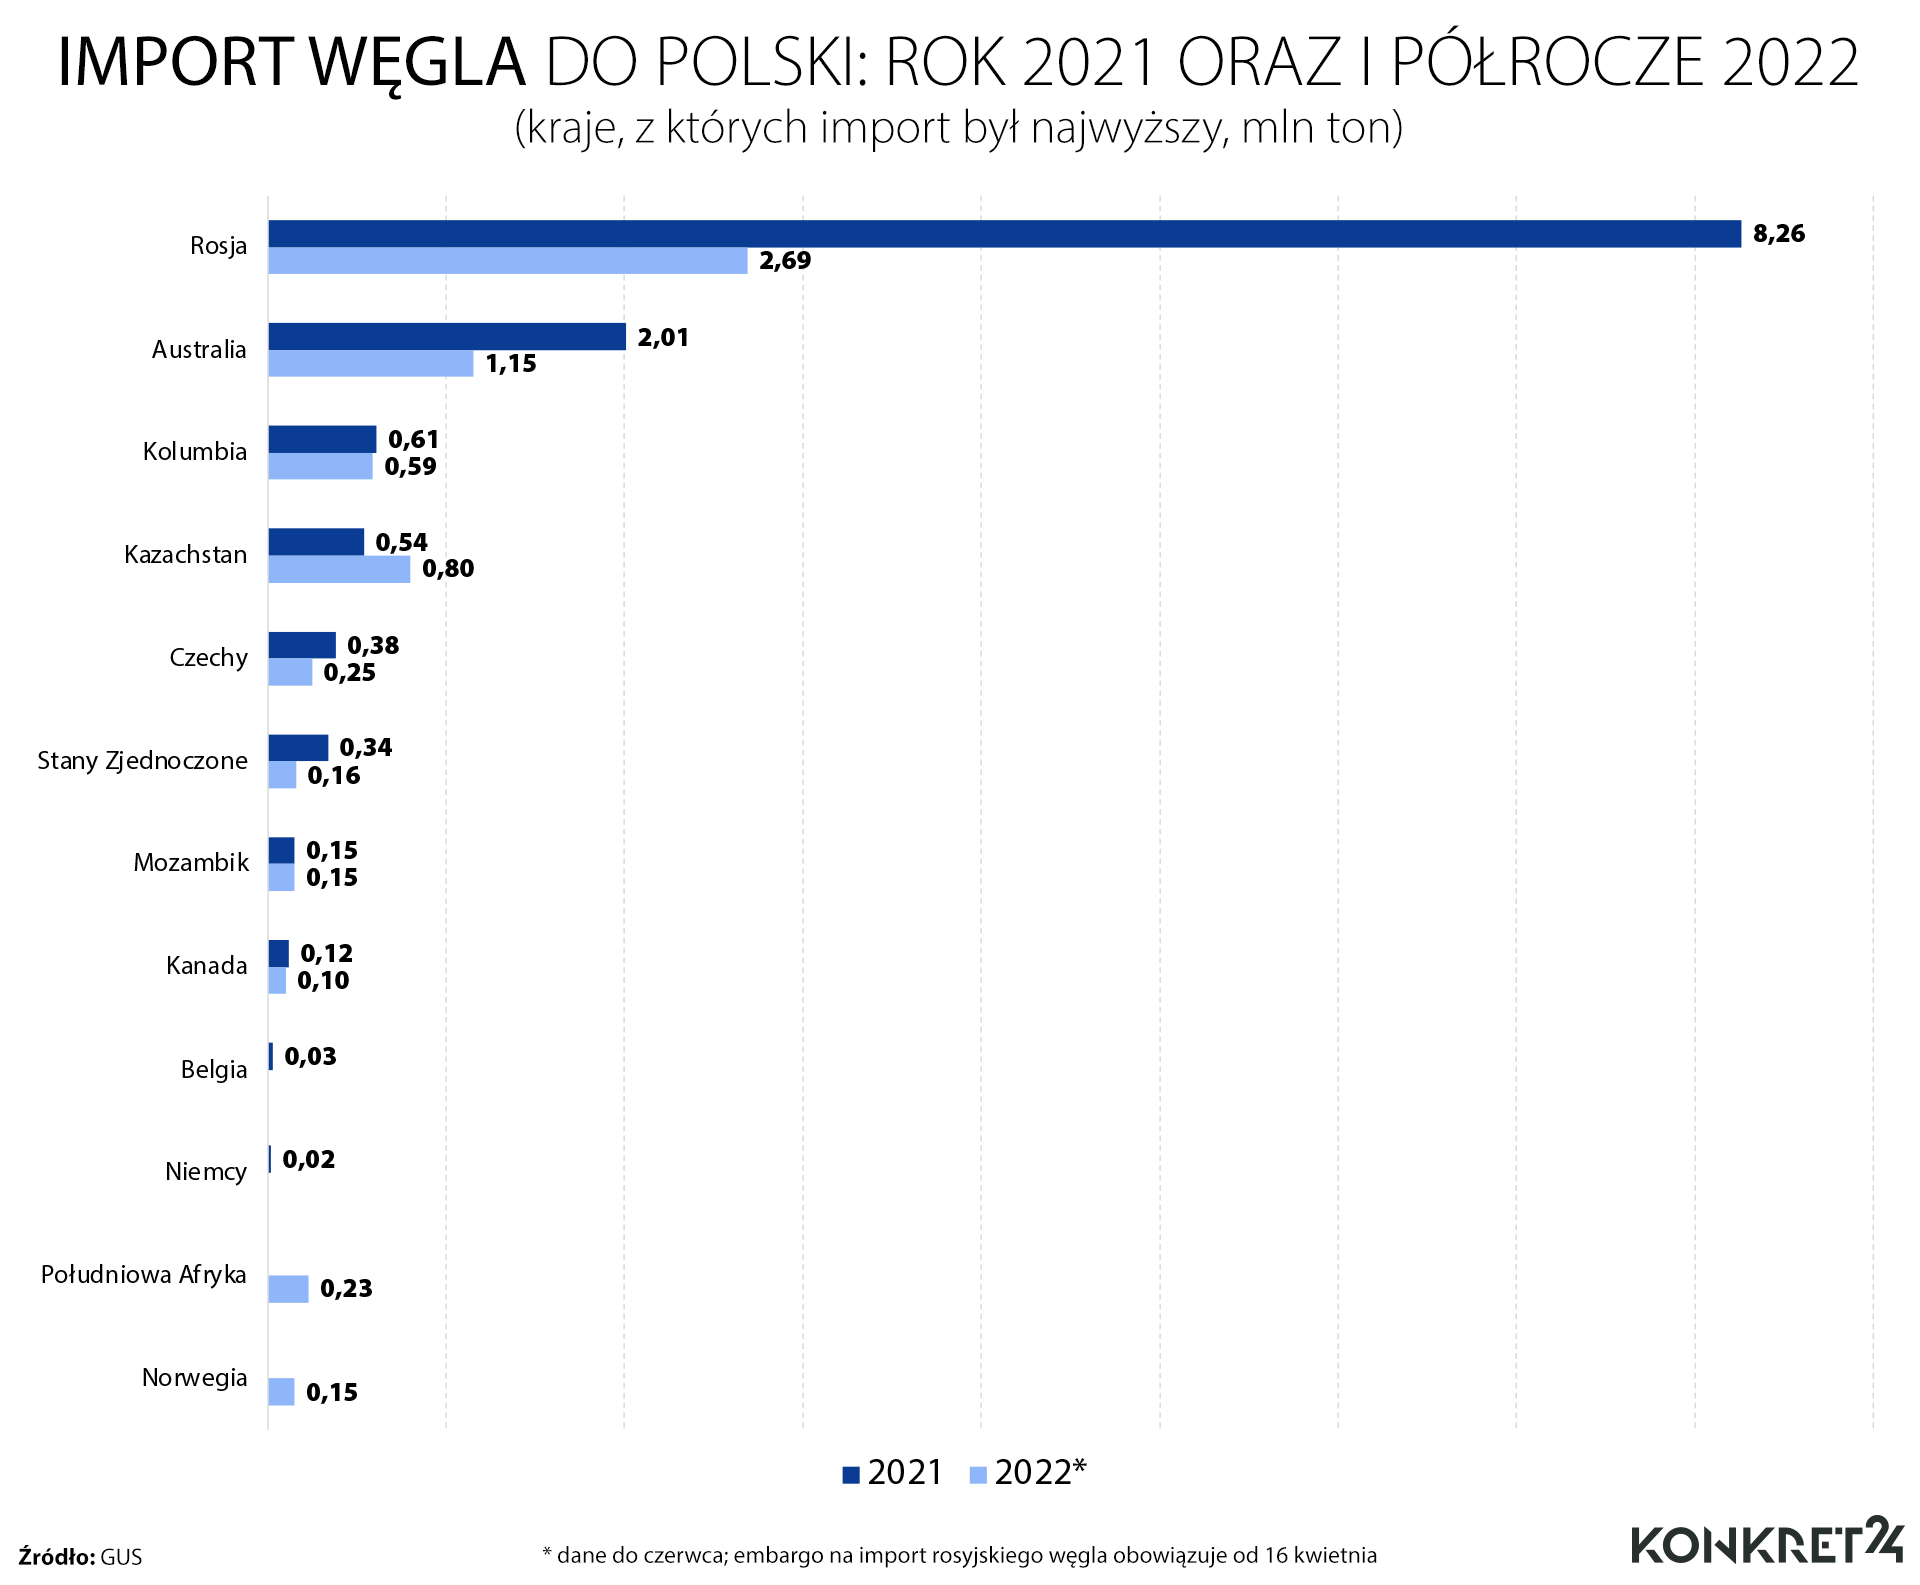 Import węgla do Polski: rok 2021 oraz I półrocze 2022